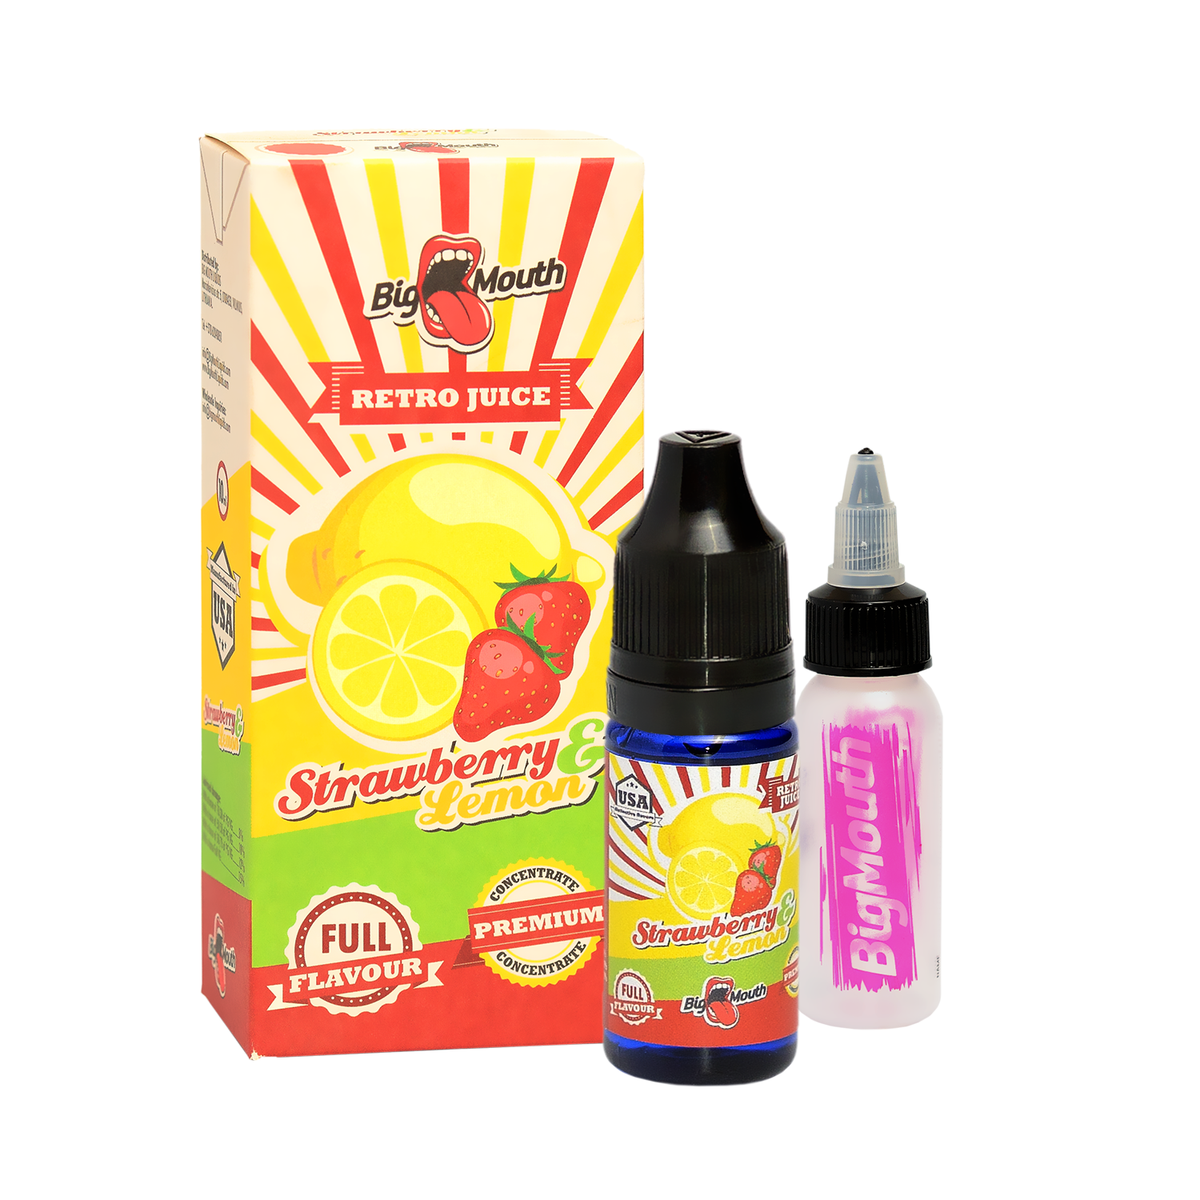 JAHODA A CITRON (Strawberry & Lemon) - aróma Big Mouth RETRO